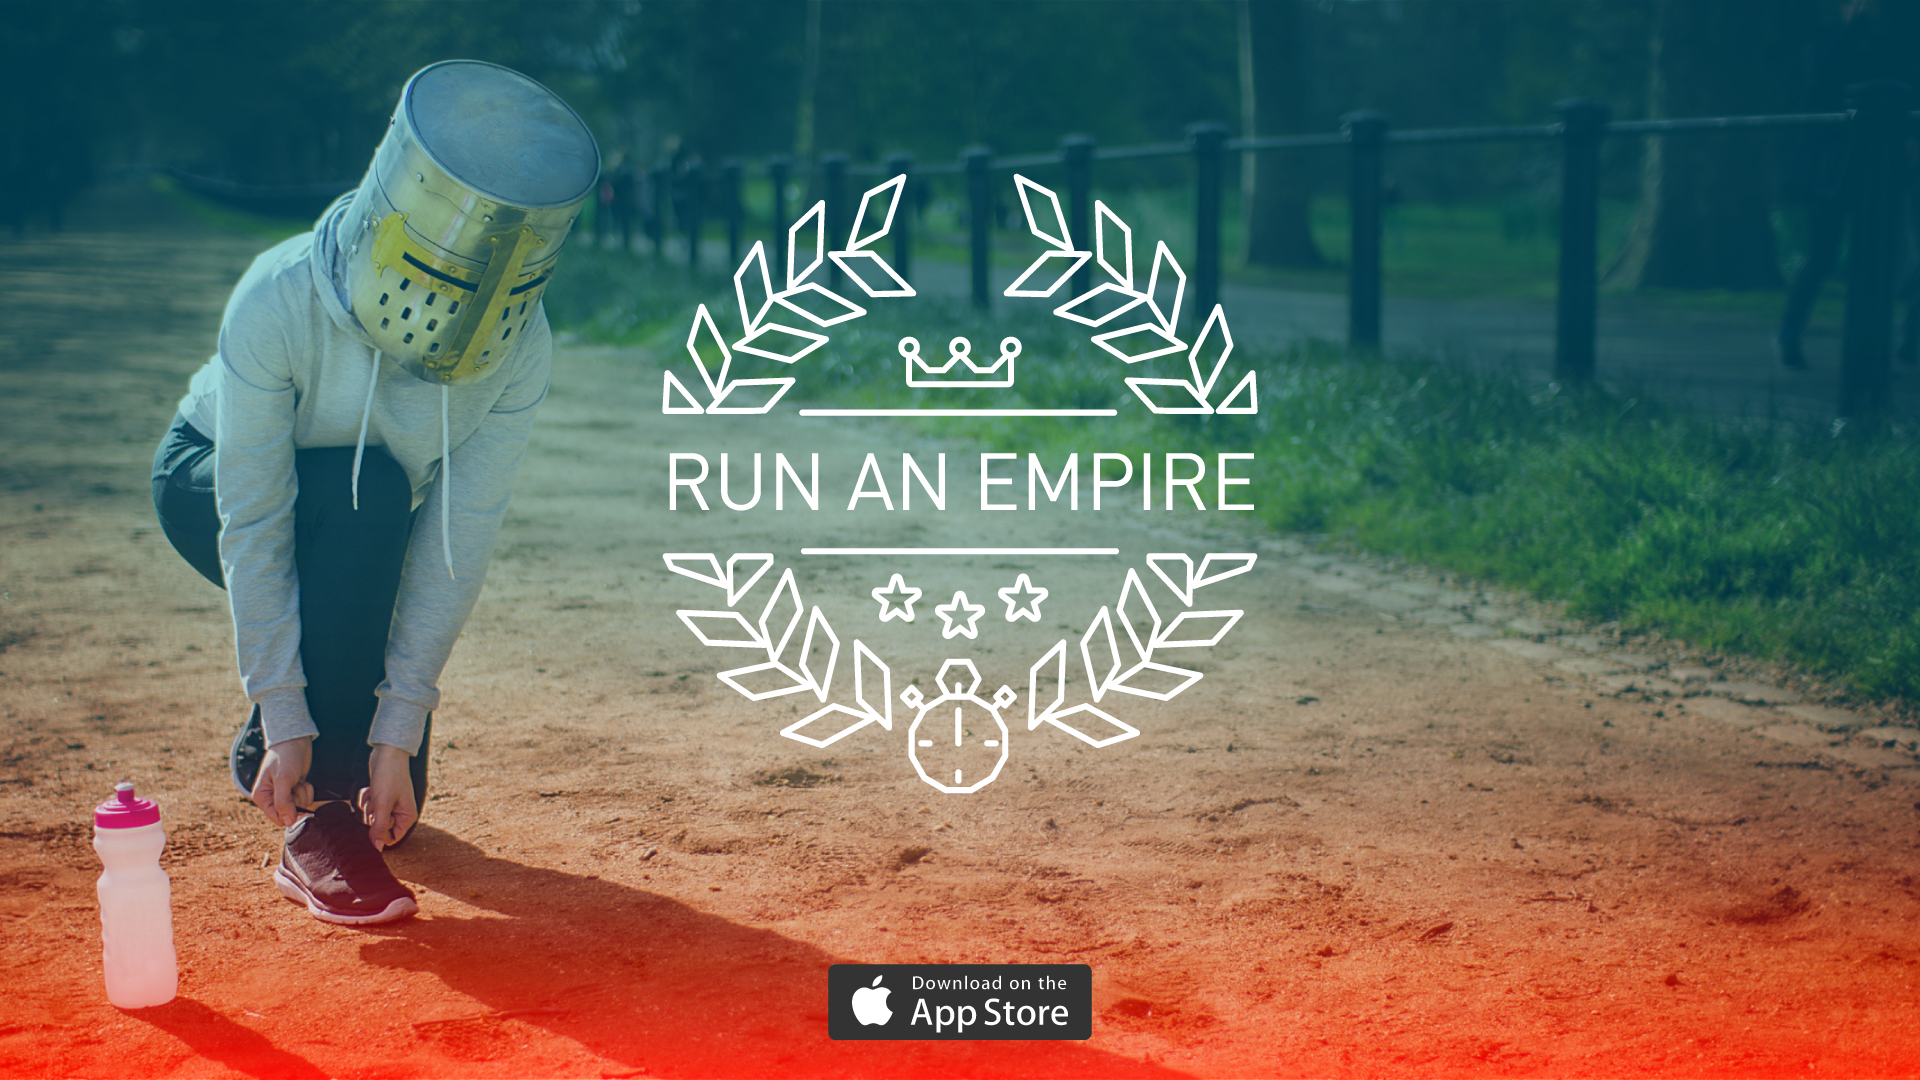 Run An Empire Screenshot 4 [Aug16]